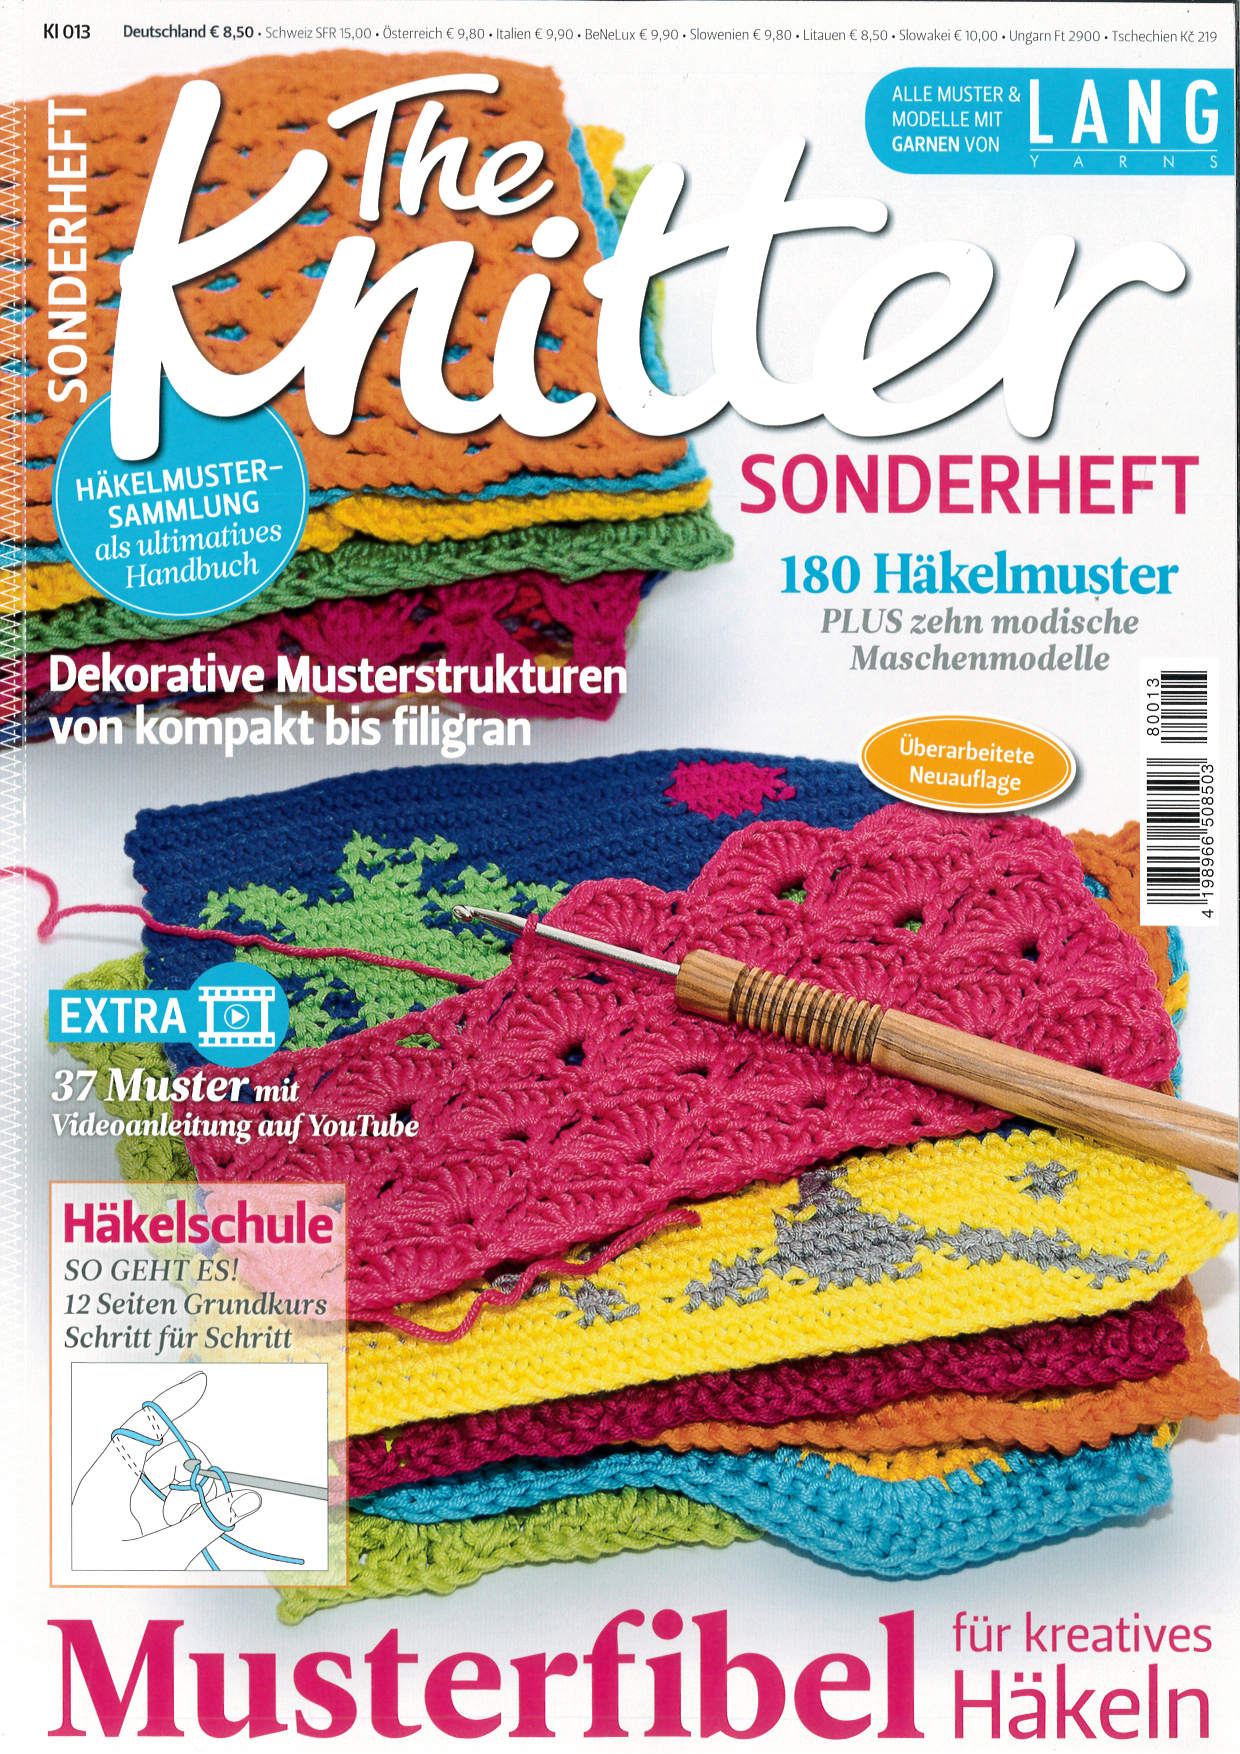 The Knitter Sonderheft